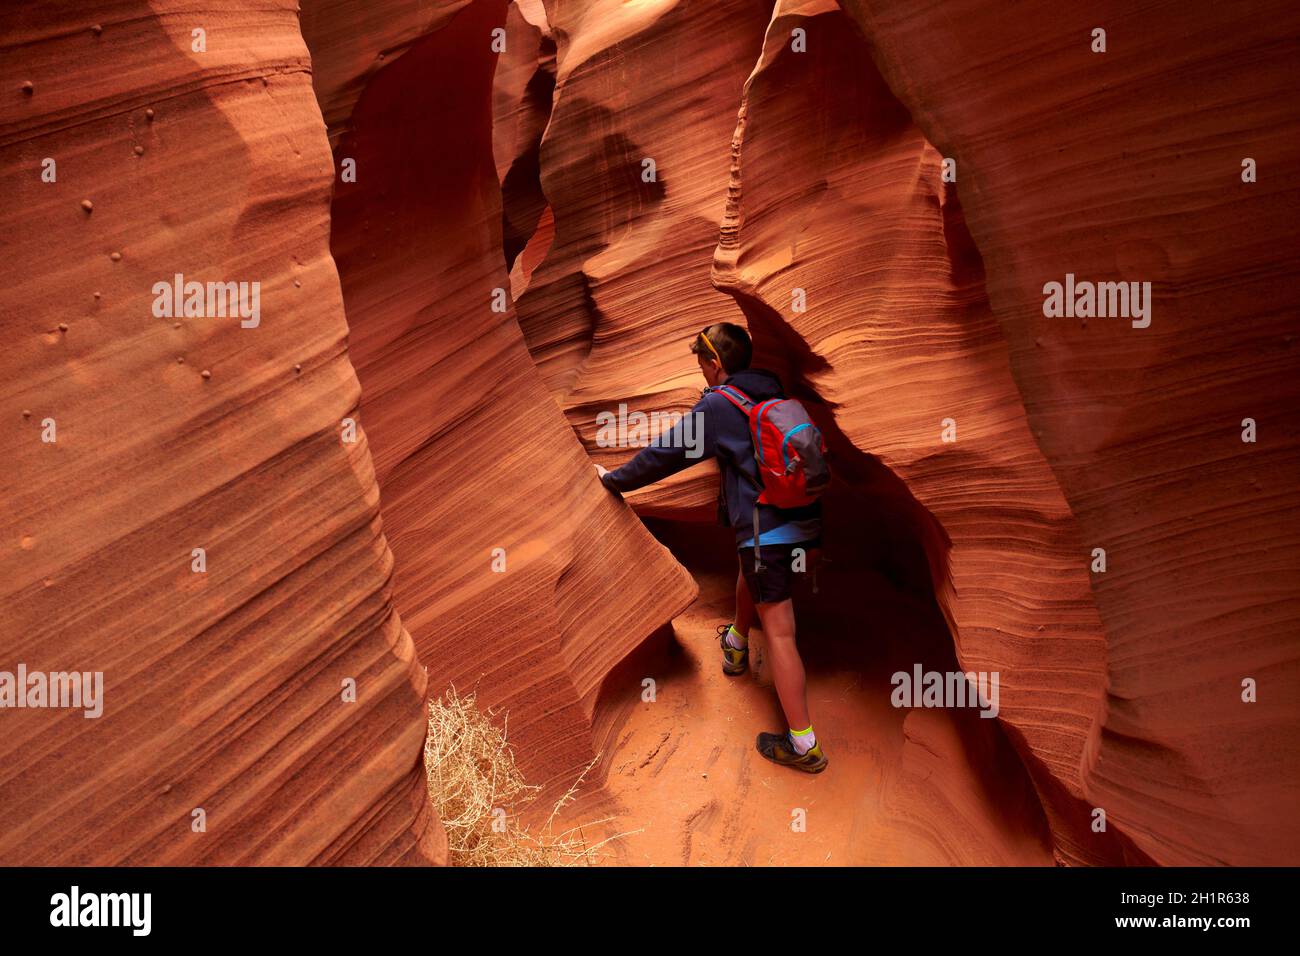 Formations de grès touristiques et érodées dans le canyon de Rattlesnake, près de page, nation Navajo, Arizona, États-Unis (modèle sorti) Banque D'Images